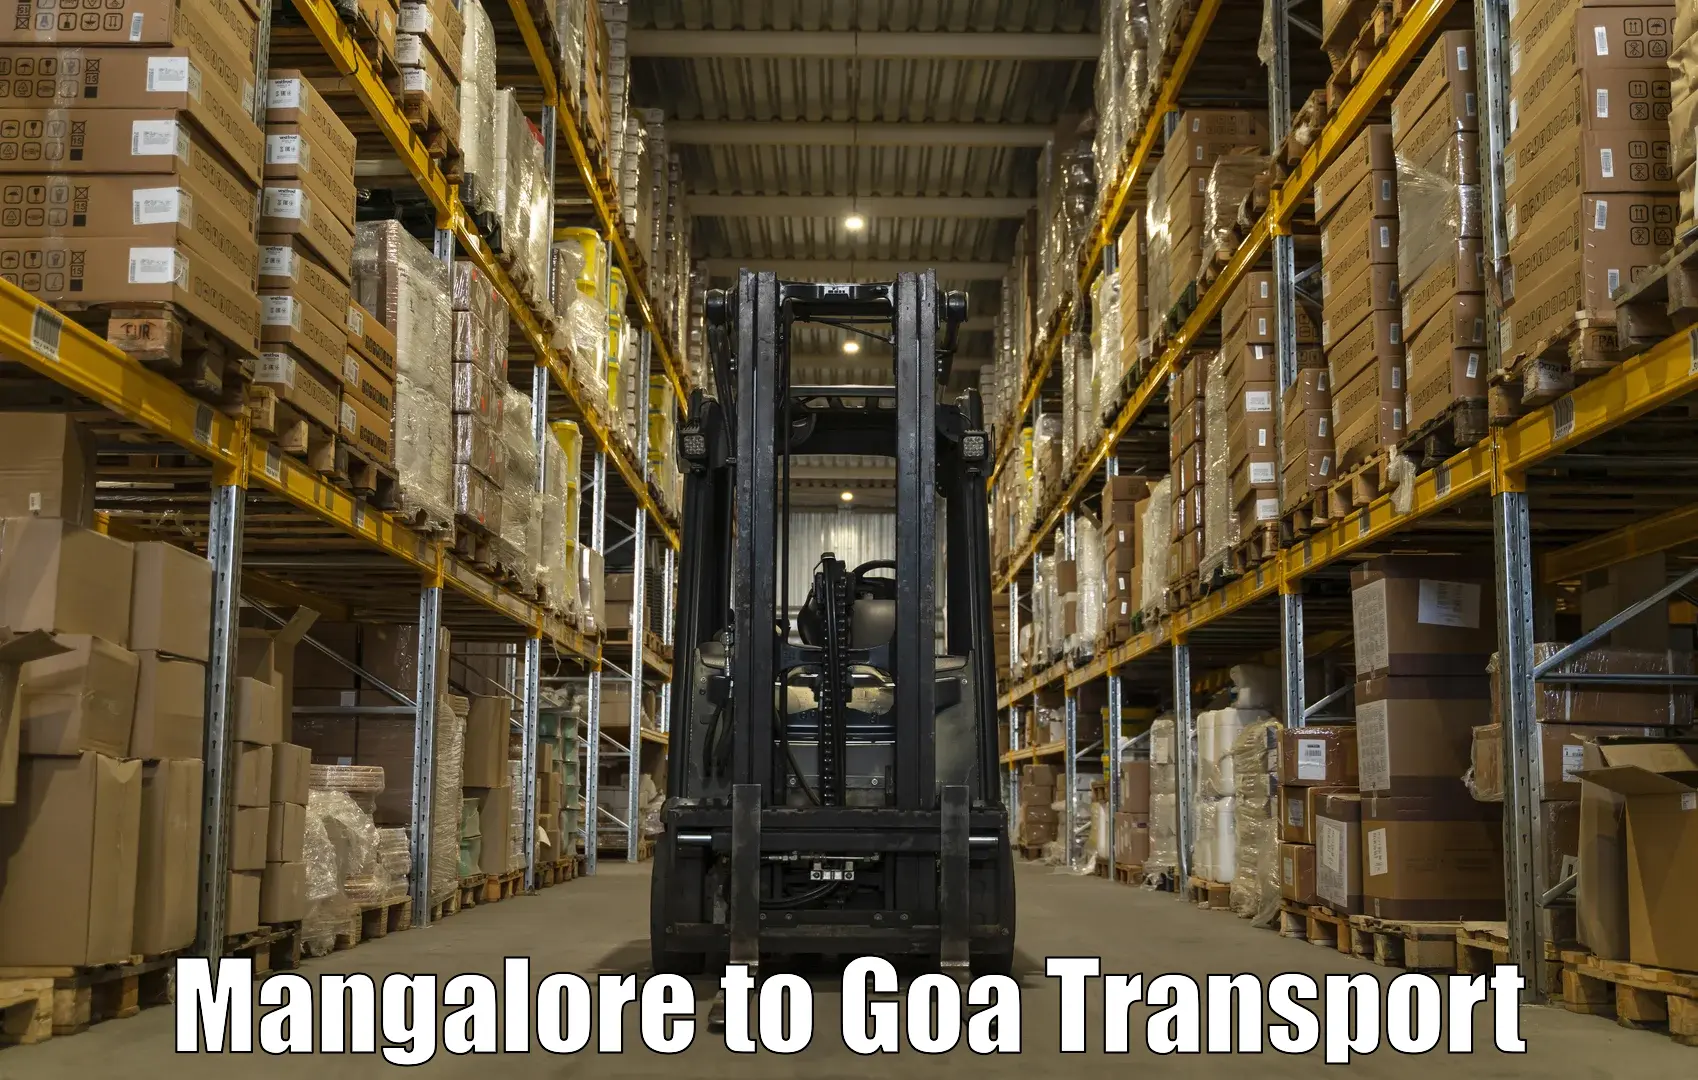 Vehicle transport services Mangalore to Goa University